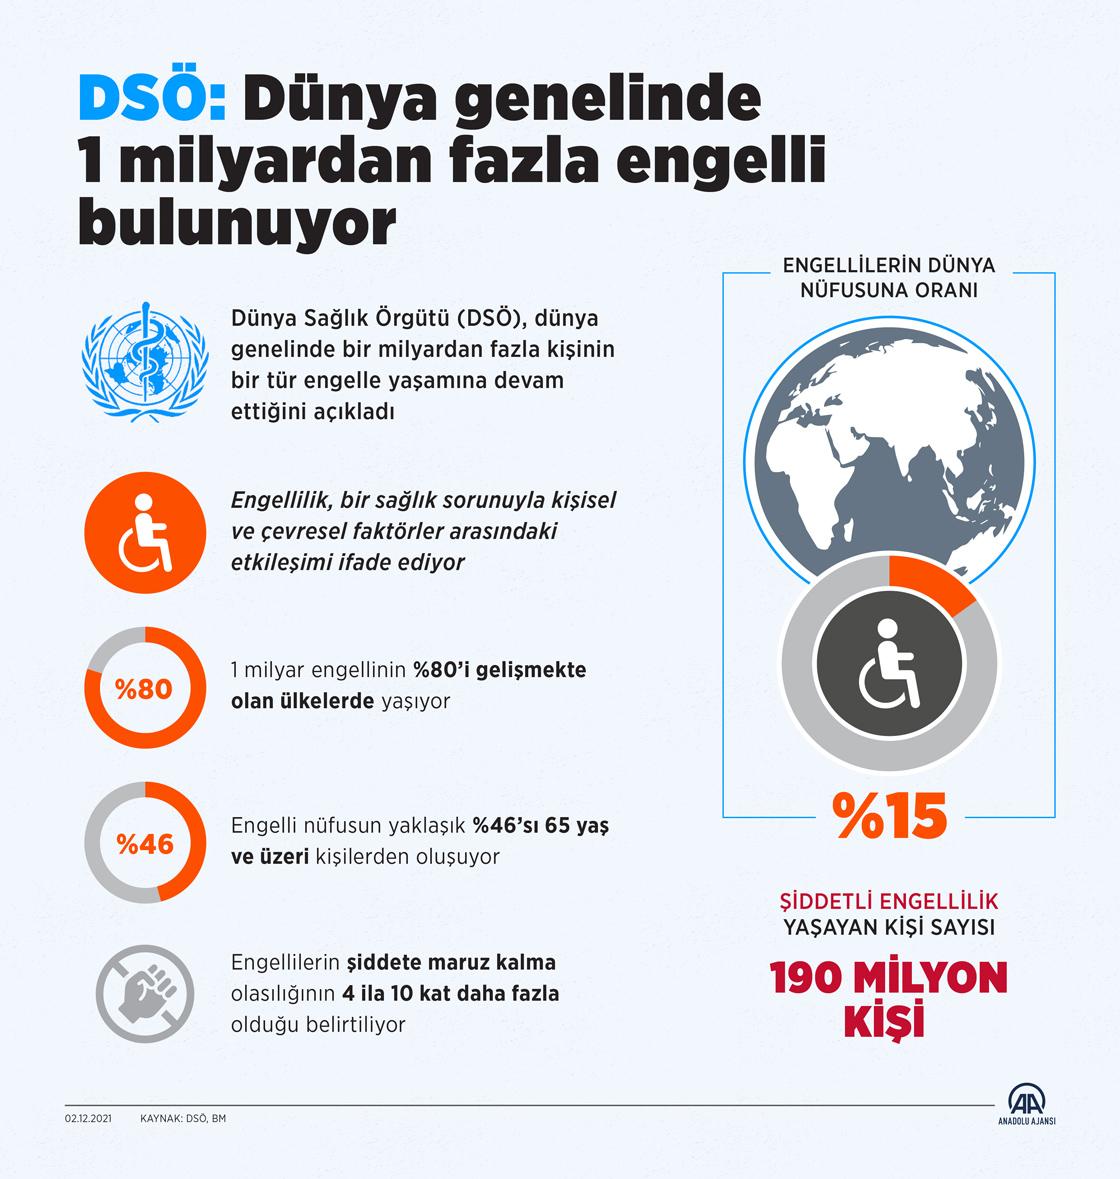 DSÖ: Dünya genelinde 1 milyardan fazla engelli bulunuyor